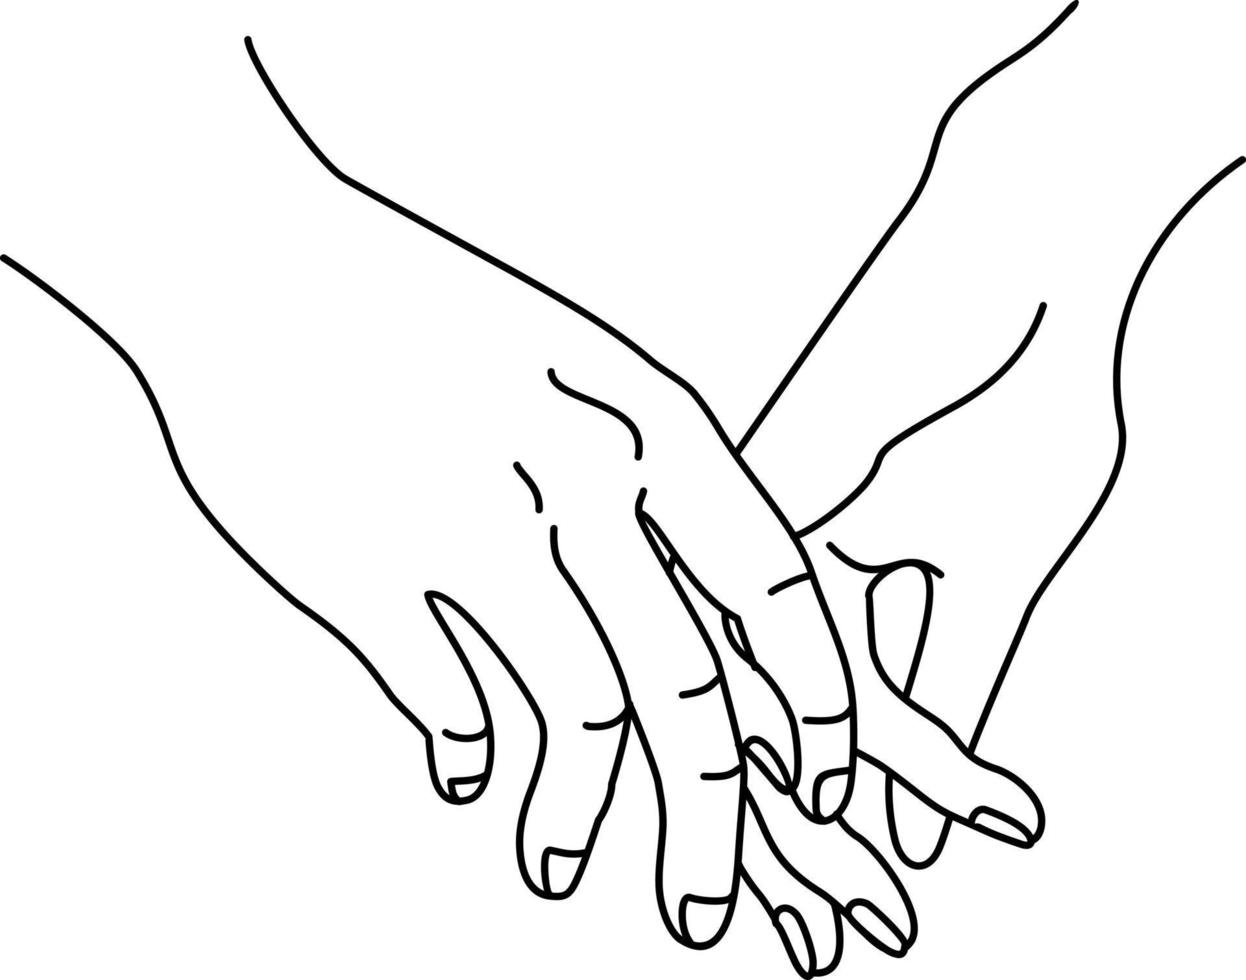 Hände eines Paares halten einander, was Zusammengehörigkeit und Zuneigung bedeutet. eine Silhouettendarstellung in einer einfachen Zeichnung. lineare Zeichnung. herzlichen glückwunsch zum valentinstag. postkarte, plakat vektor